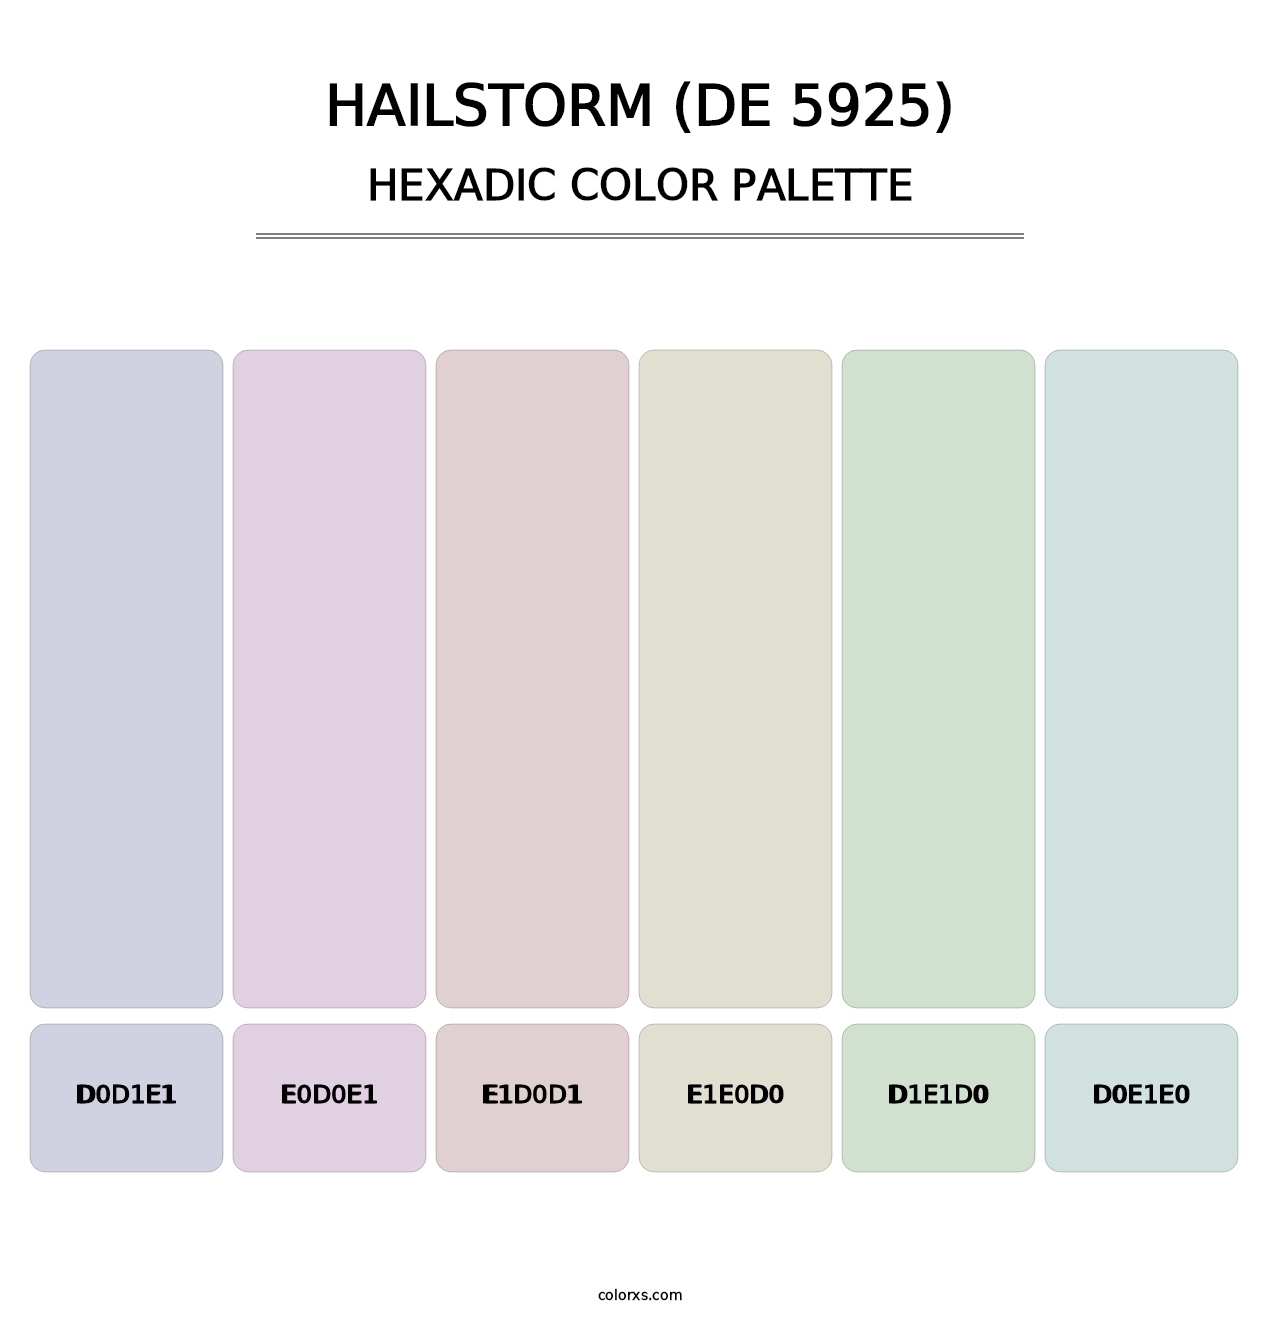 Hailstorm (DE 5925) - Hexadic Color Palette